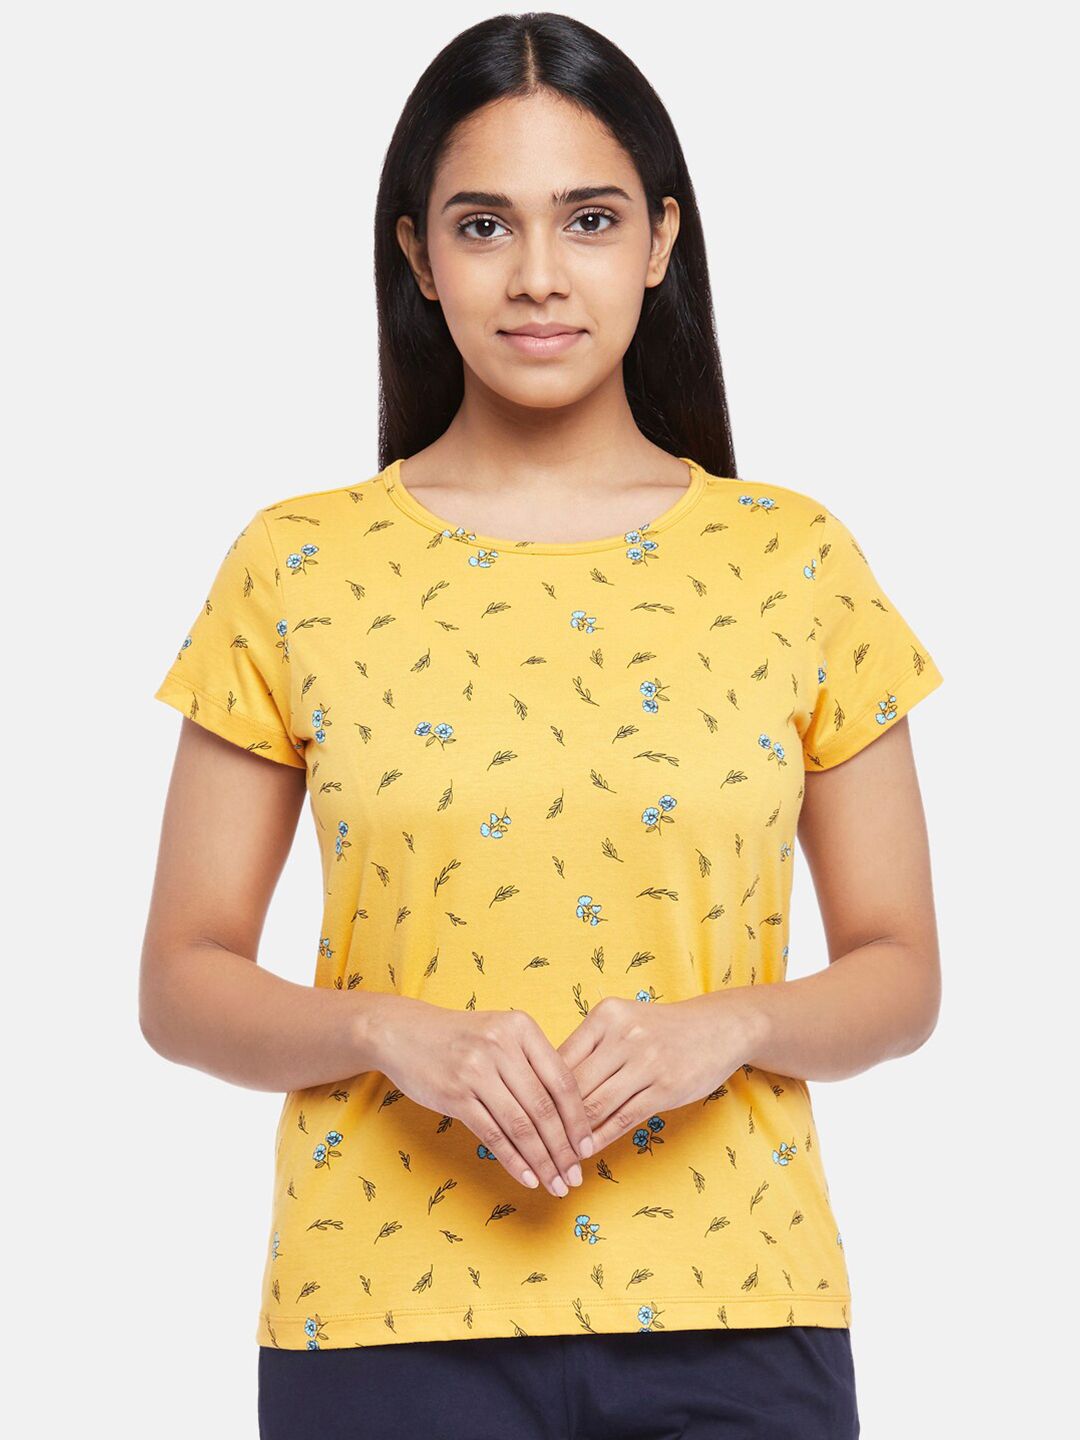 Dreamz by Pantaloons Women Mustard Yellow Regular Lounge tshirt Price in India